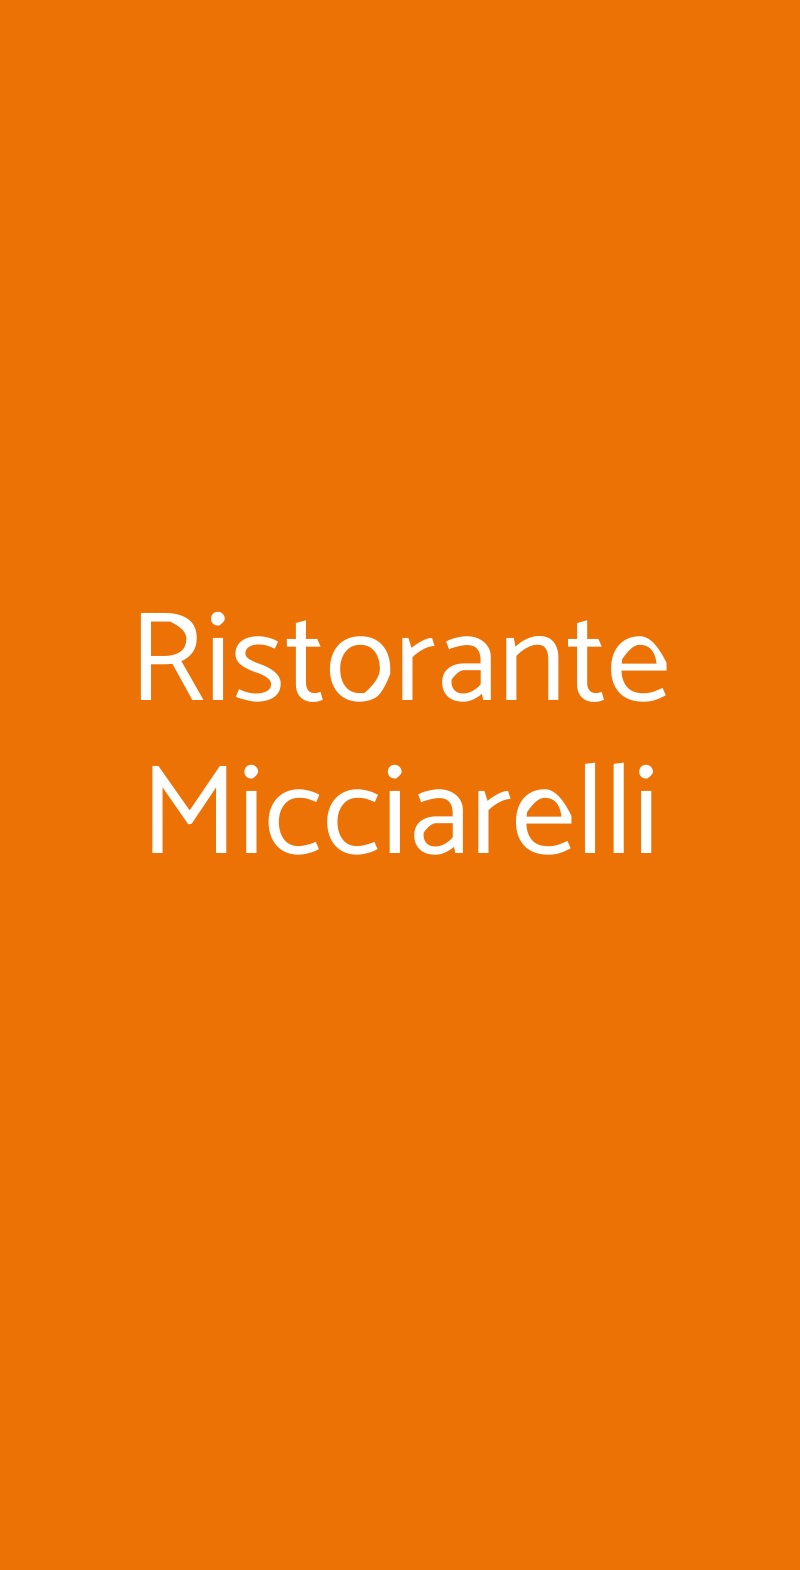 Ristorante Micciarelli Tivoli menù 1 pagina